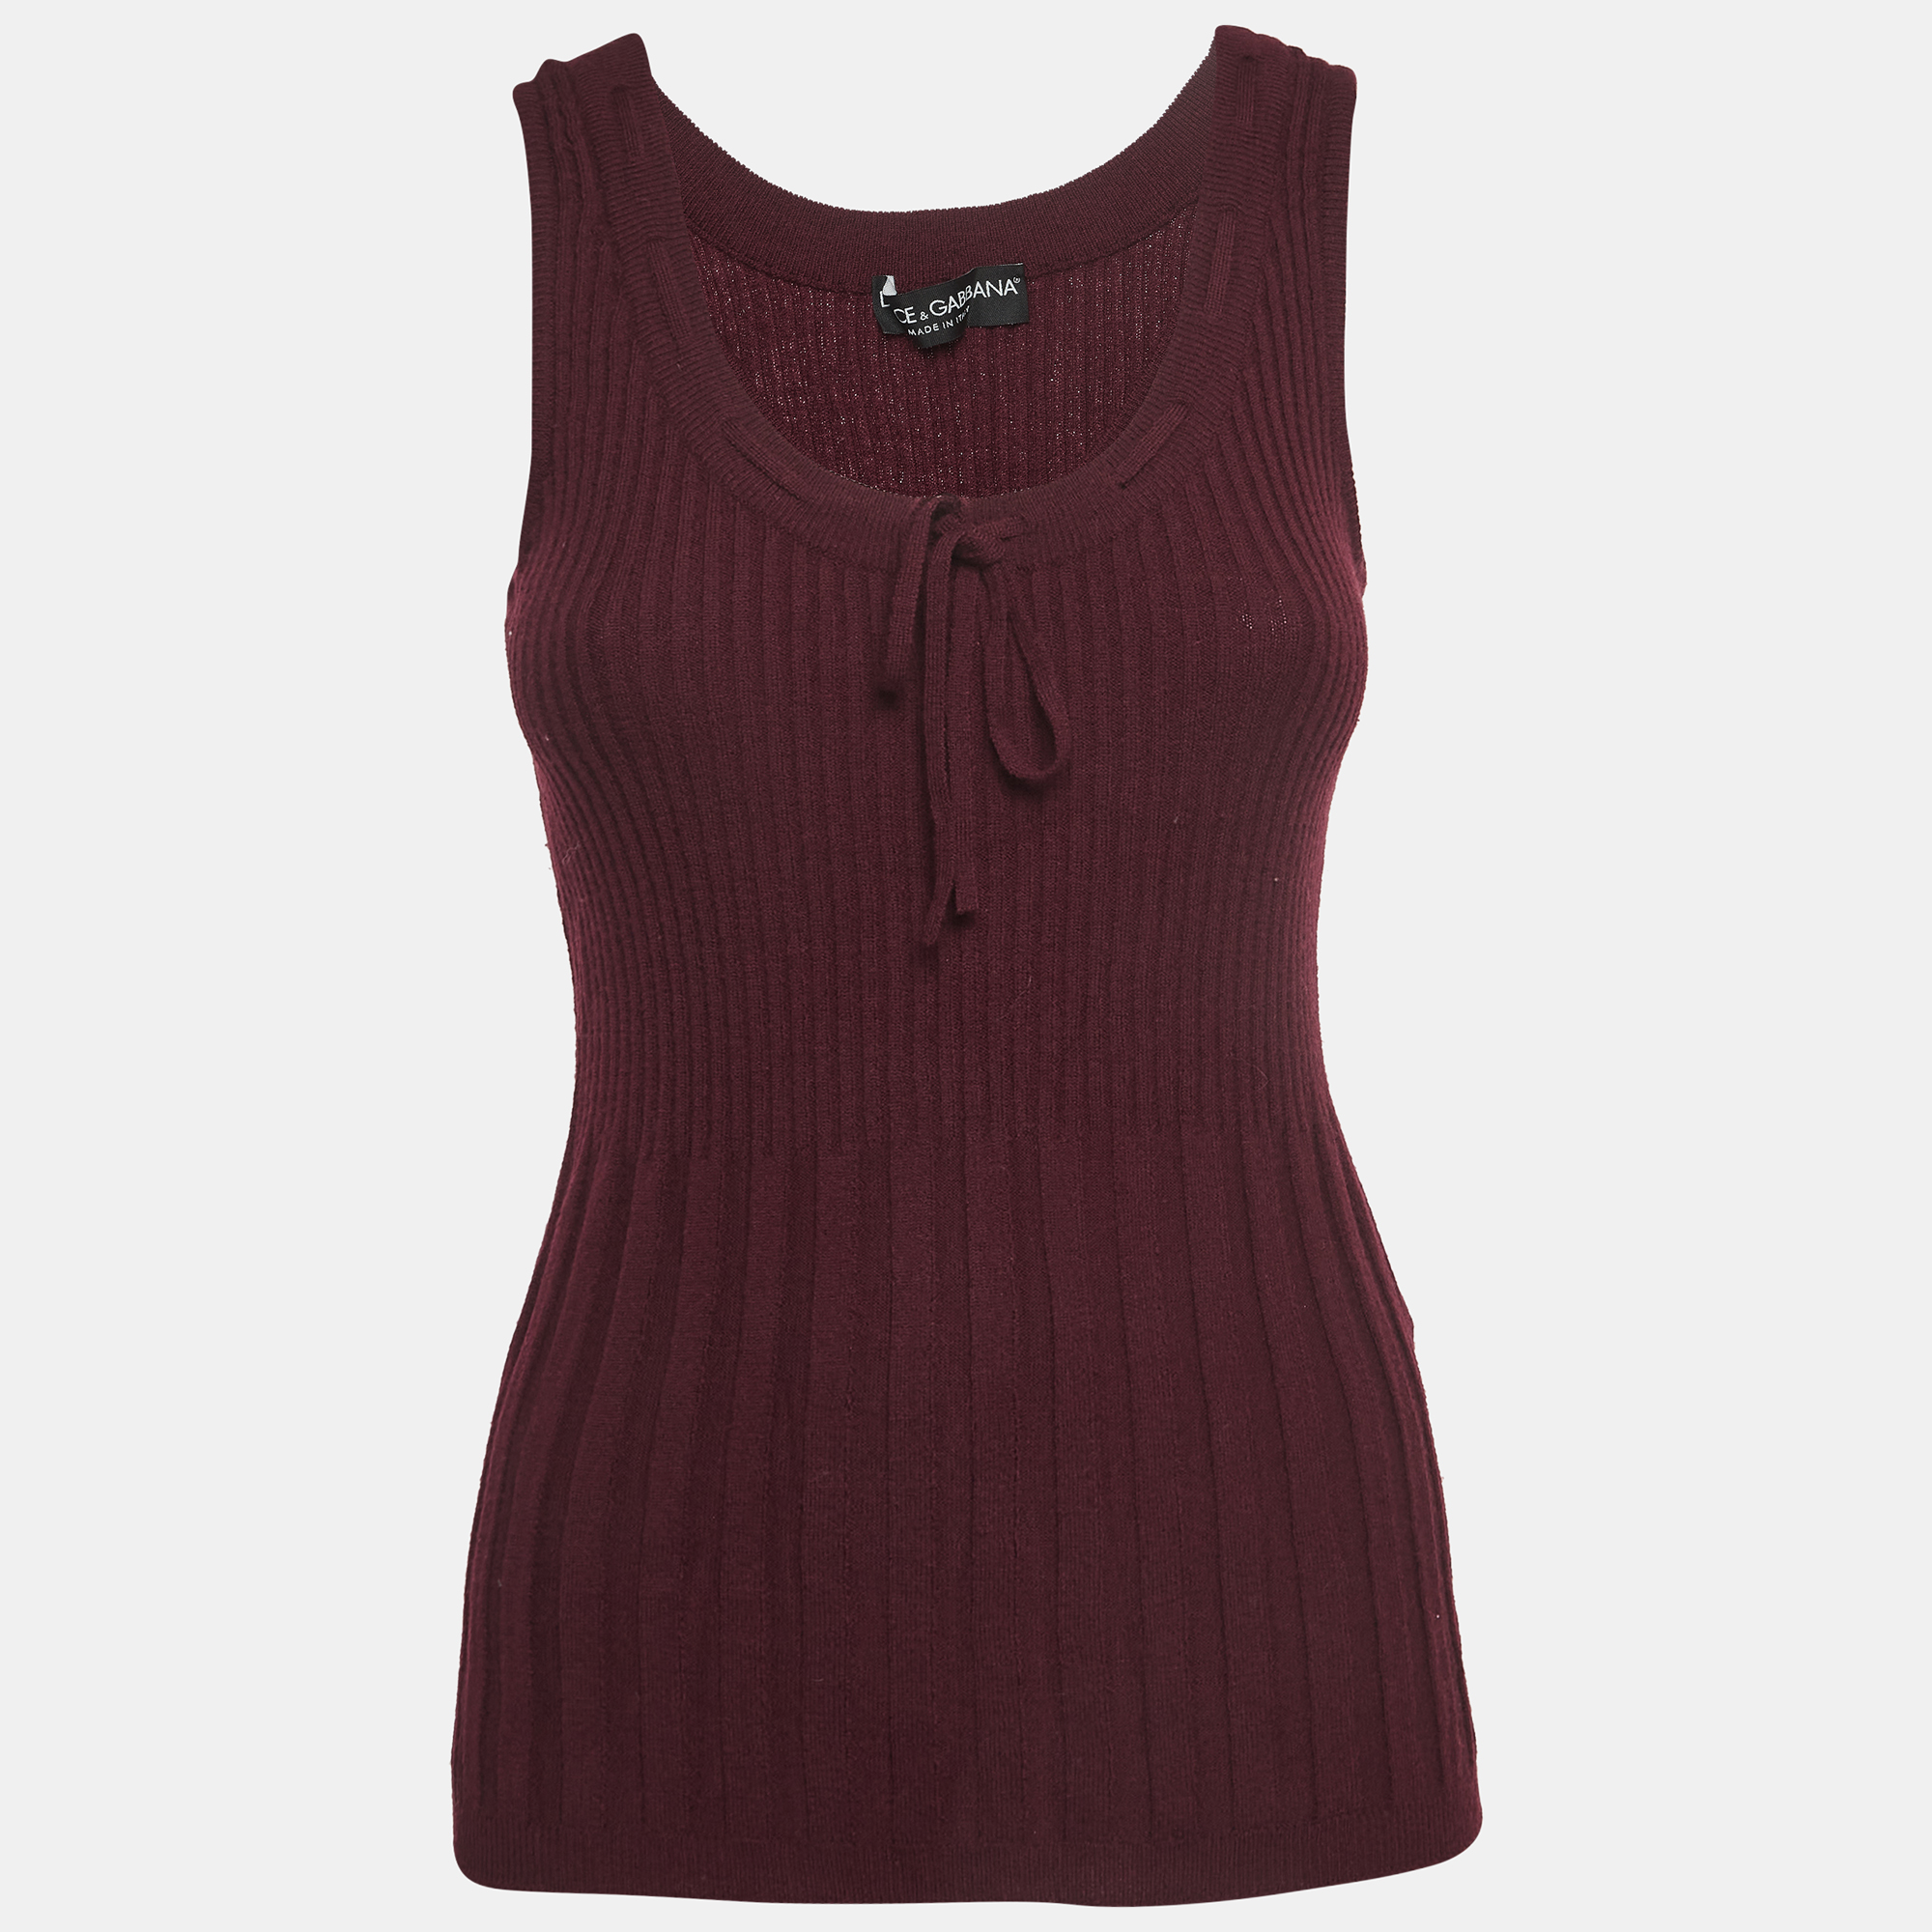 Dolce & gabbana burgundy wool blend knit sleeveless top m